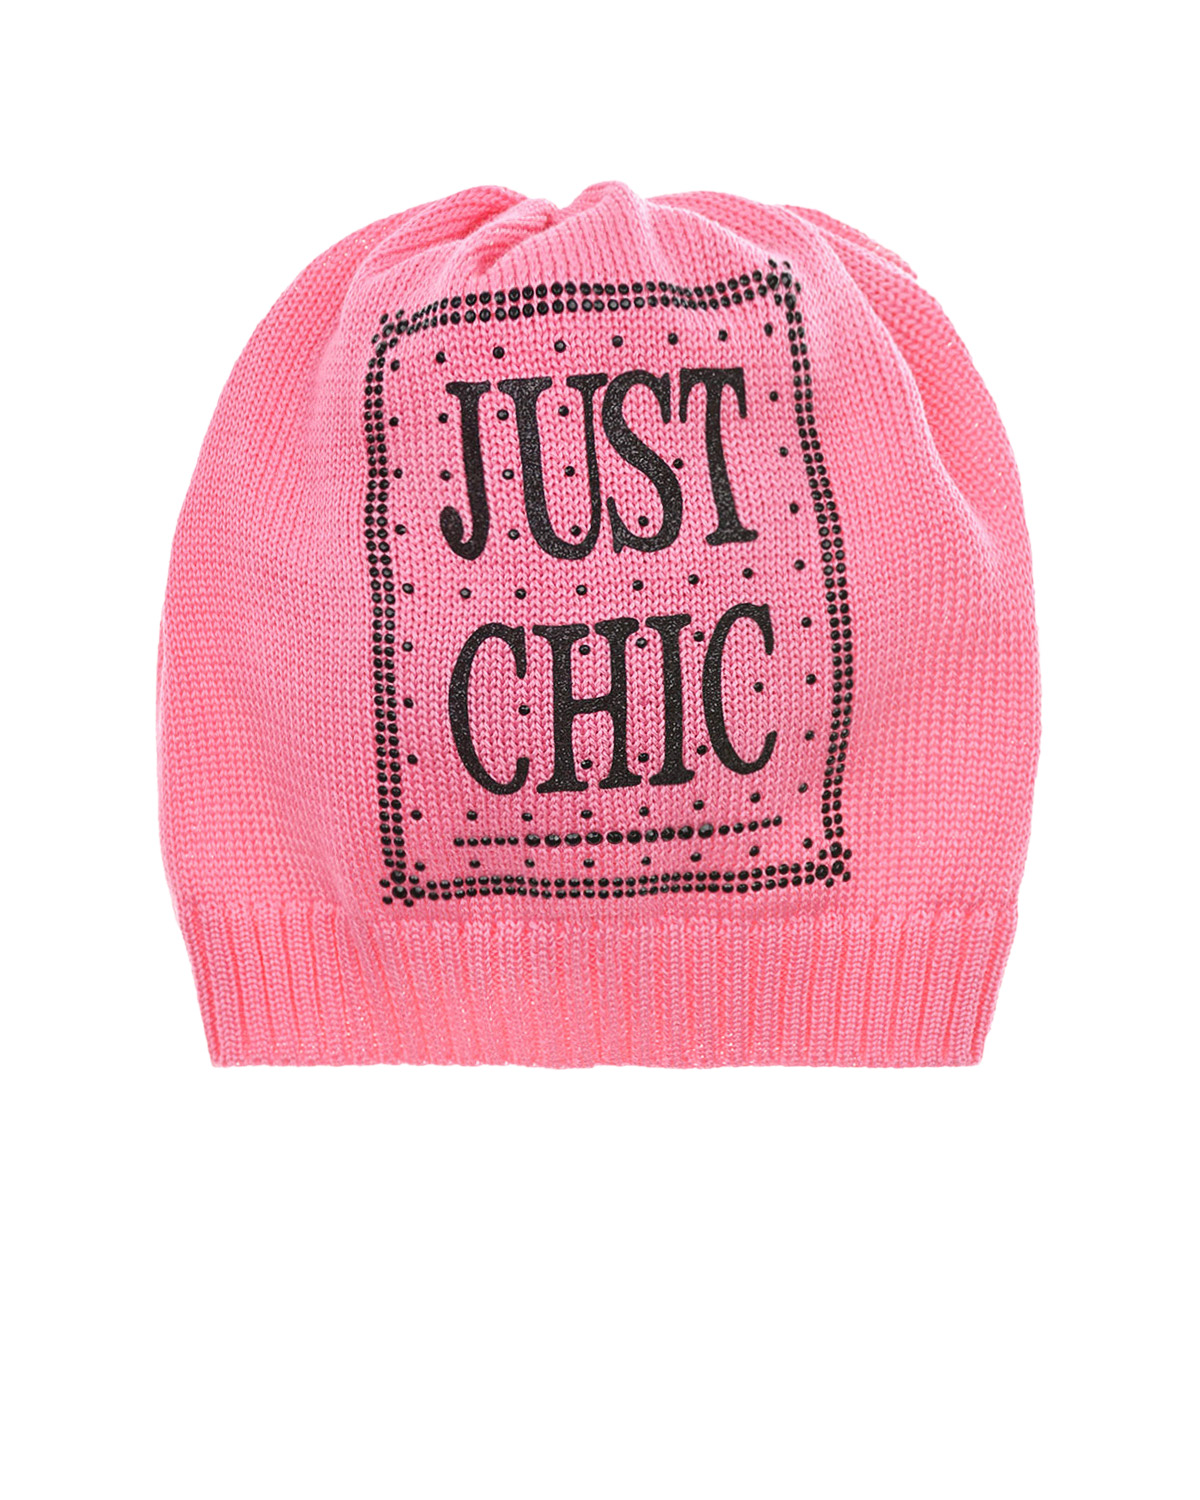 Розовая шапка с принтом "Just Chic" Catya детская, размер 53, цвет розовый - фото 1